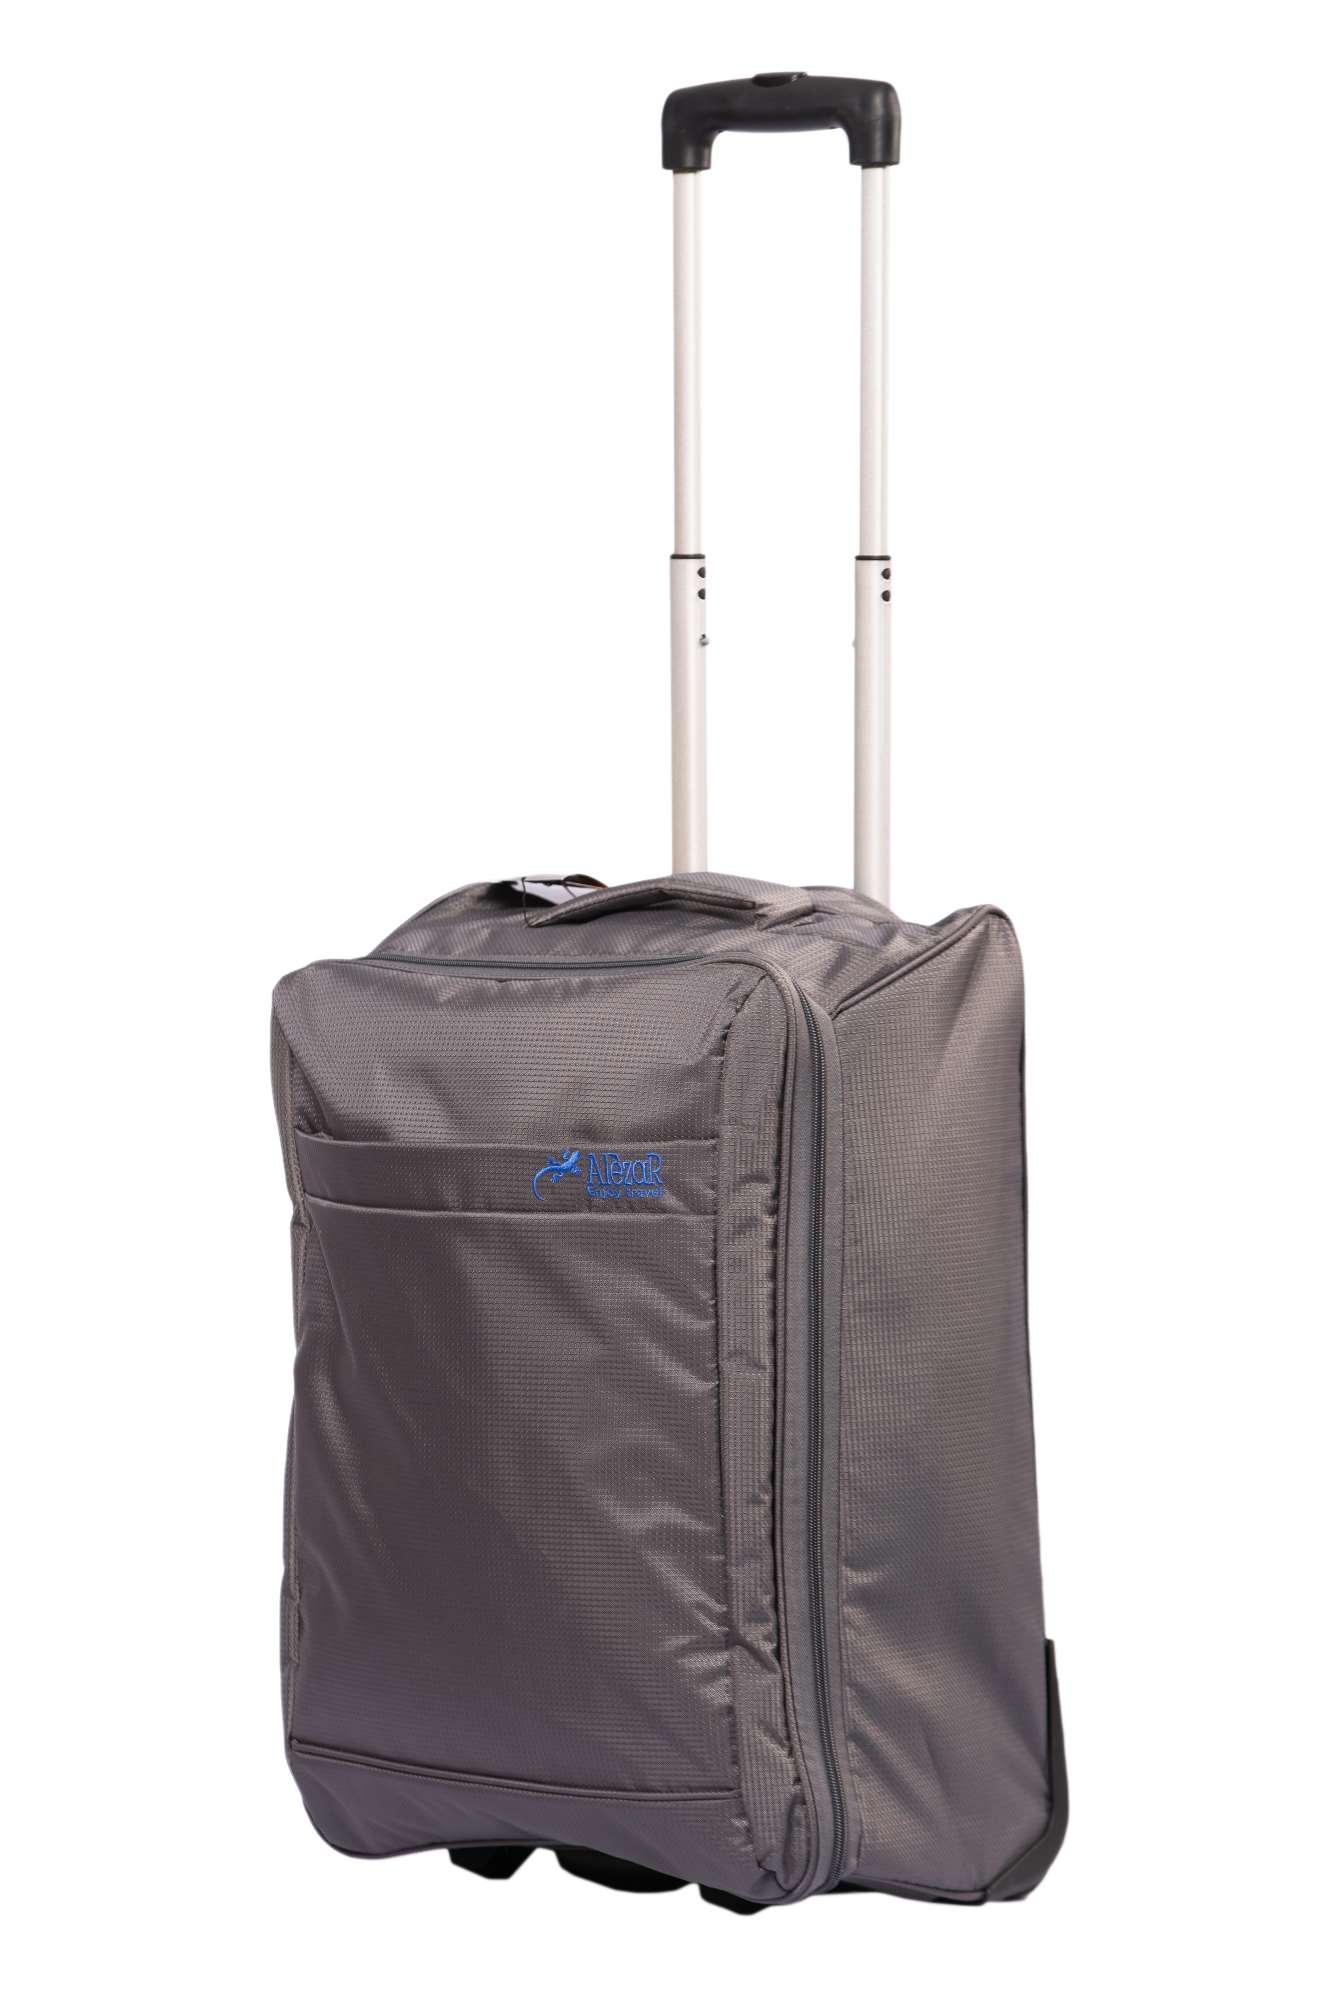 Alezar Cabin Size Travel Bag Gray 22